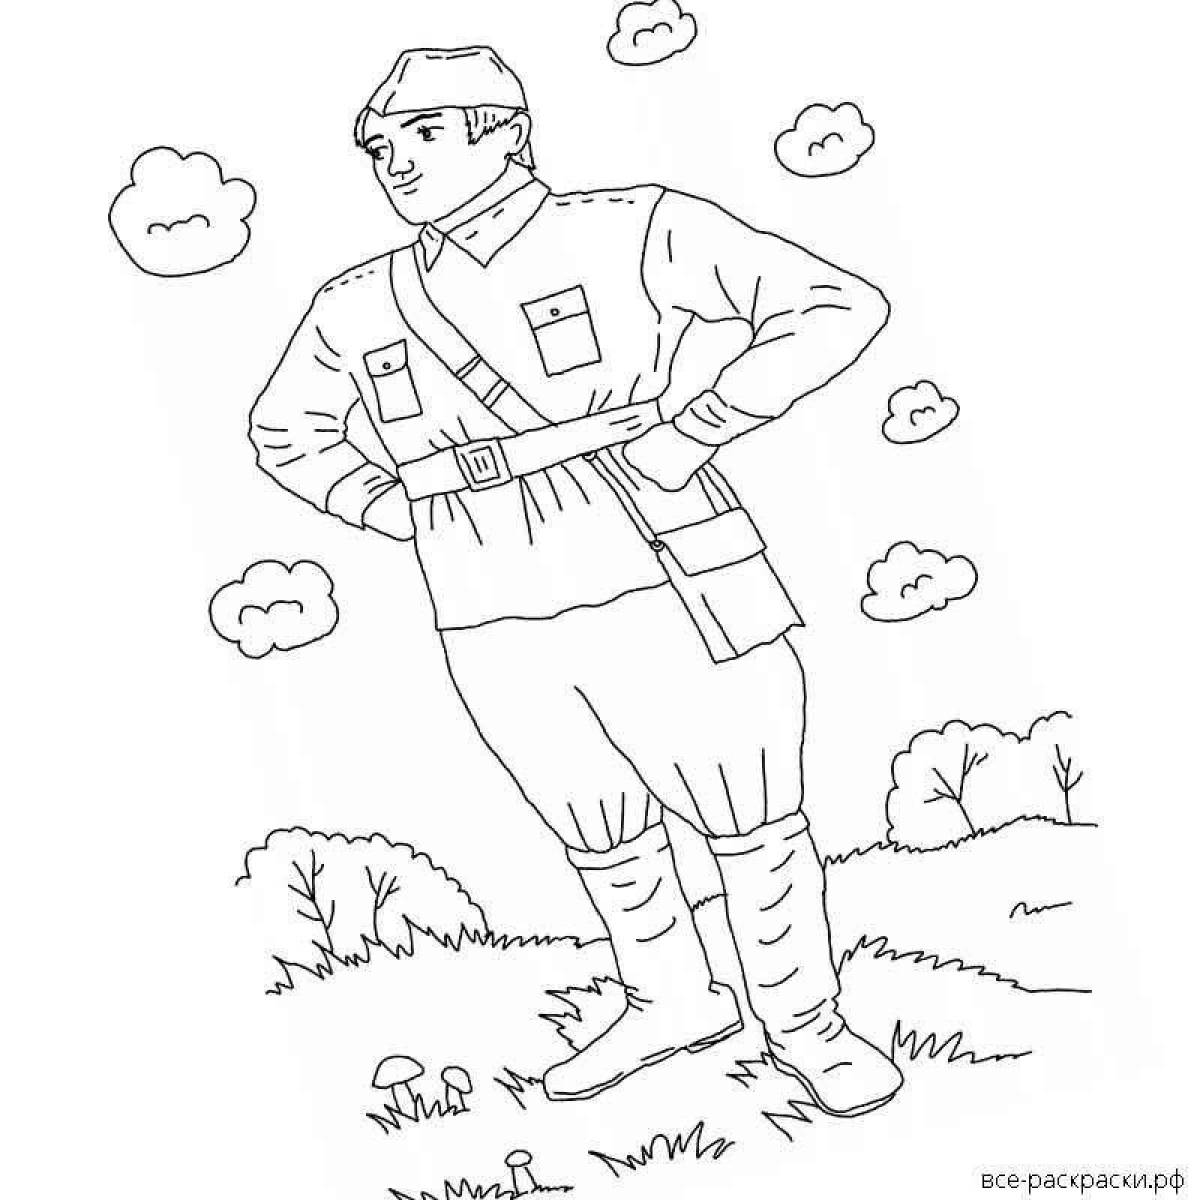 Дружелюбная раскраска рисунок солдата от школьника